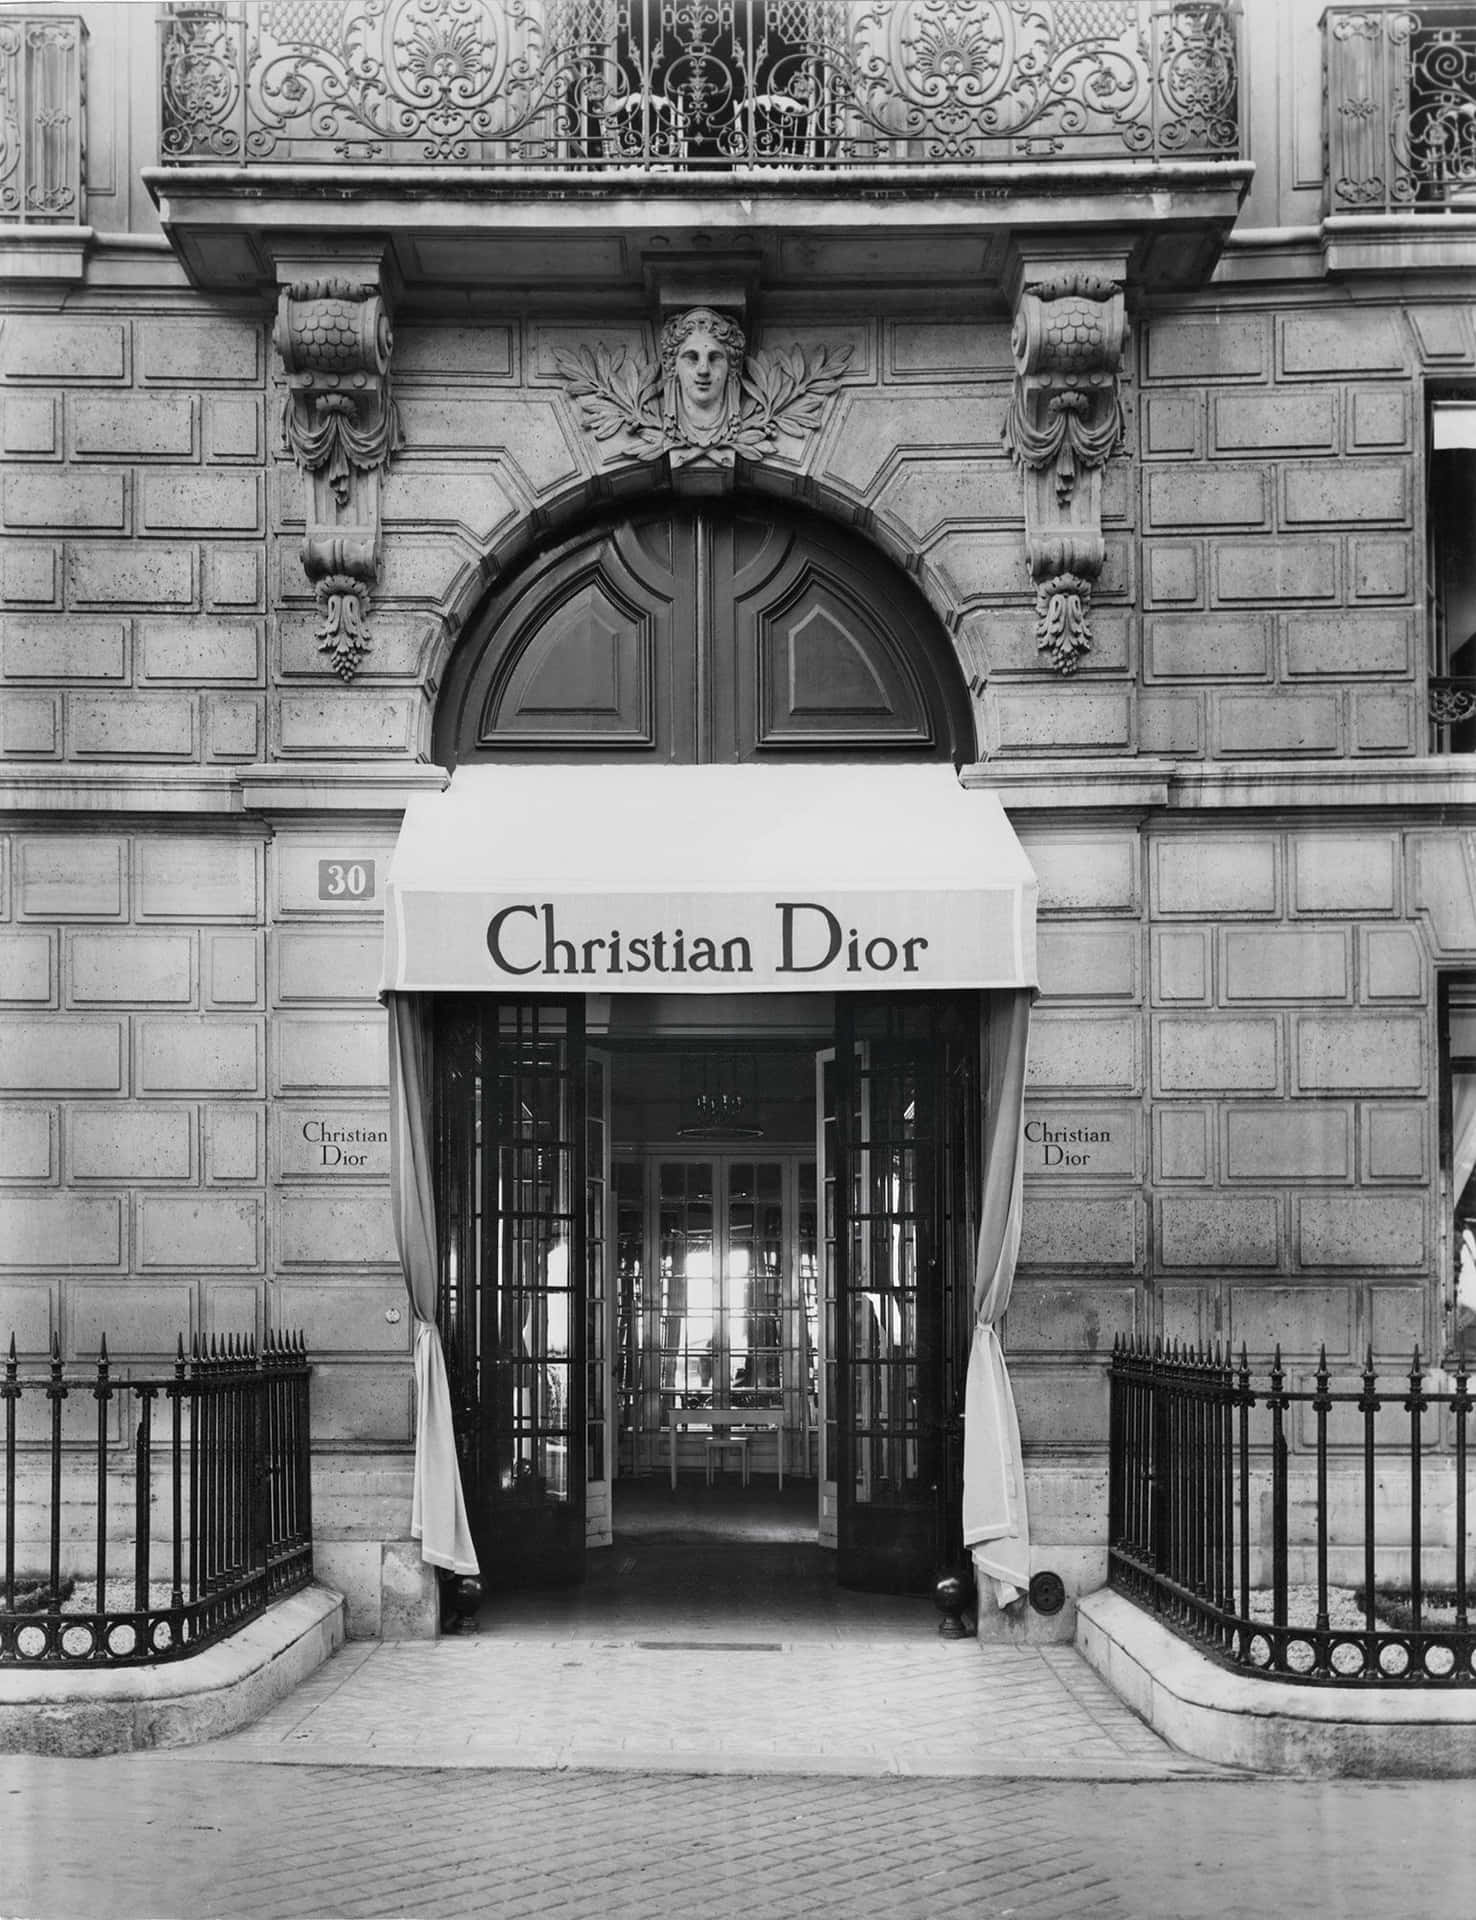 Unafoto In Bianco E Nero Di Un Edificio Con Un Cartello Per Christian Dior.